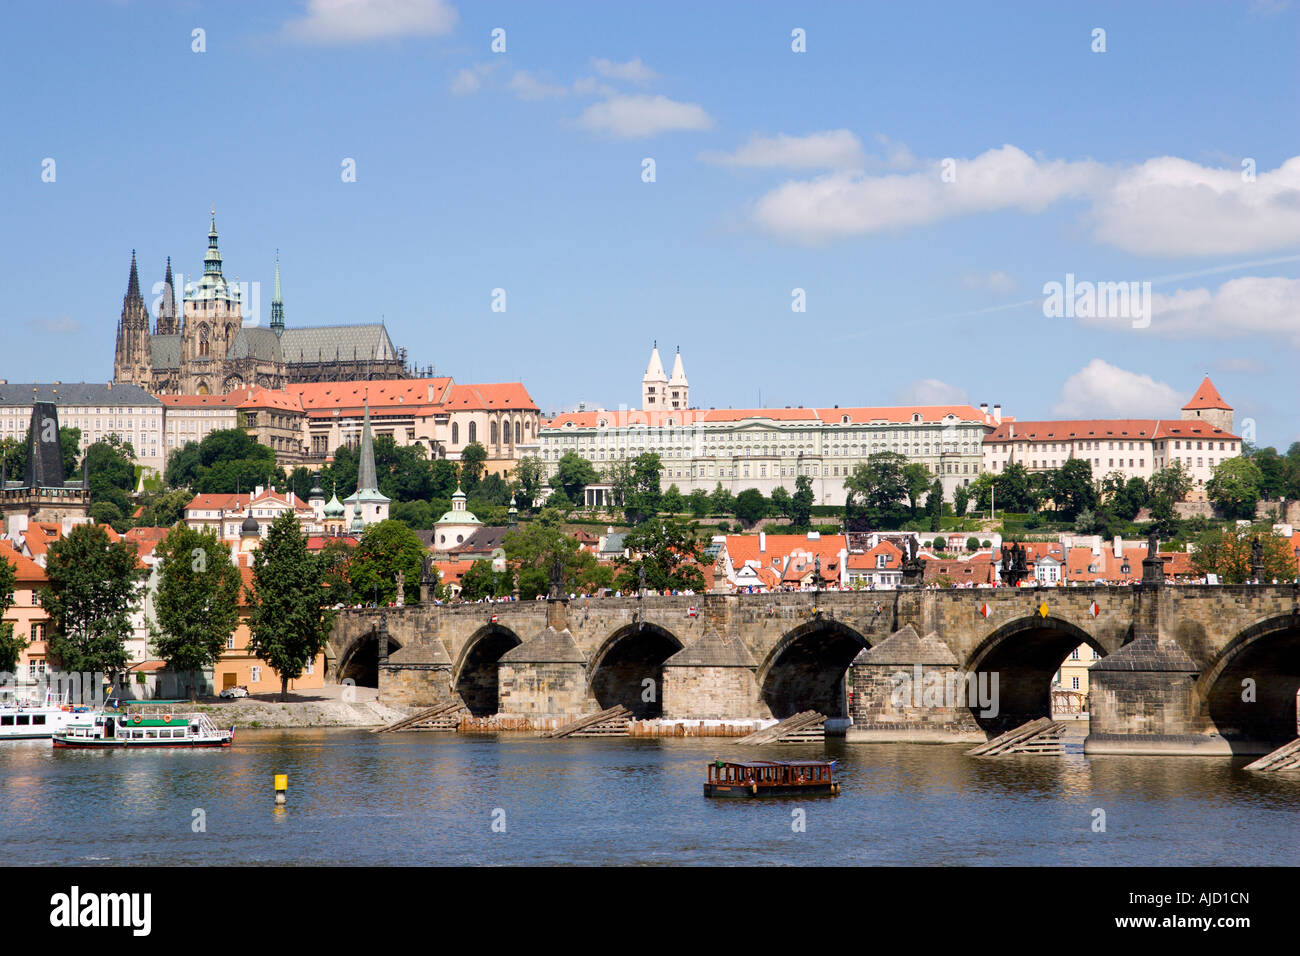 República Checa República Checa Bohemia Praga de Hradcany Charles Bridge Río Vltava, la Catedral de San Vito y el Castillo de Praga Foto de stock